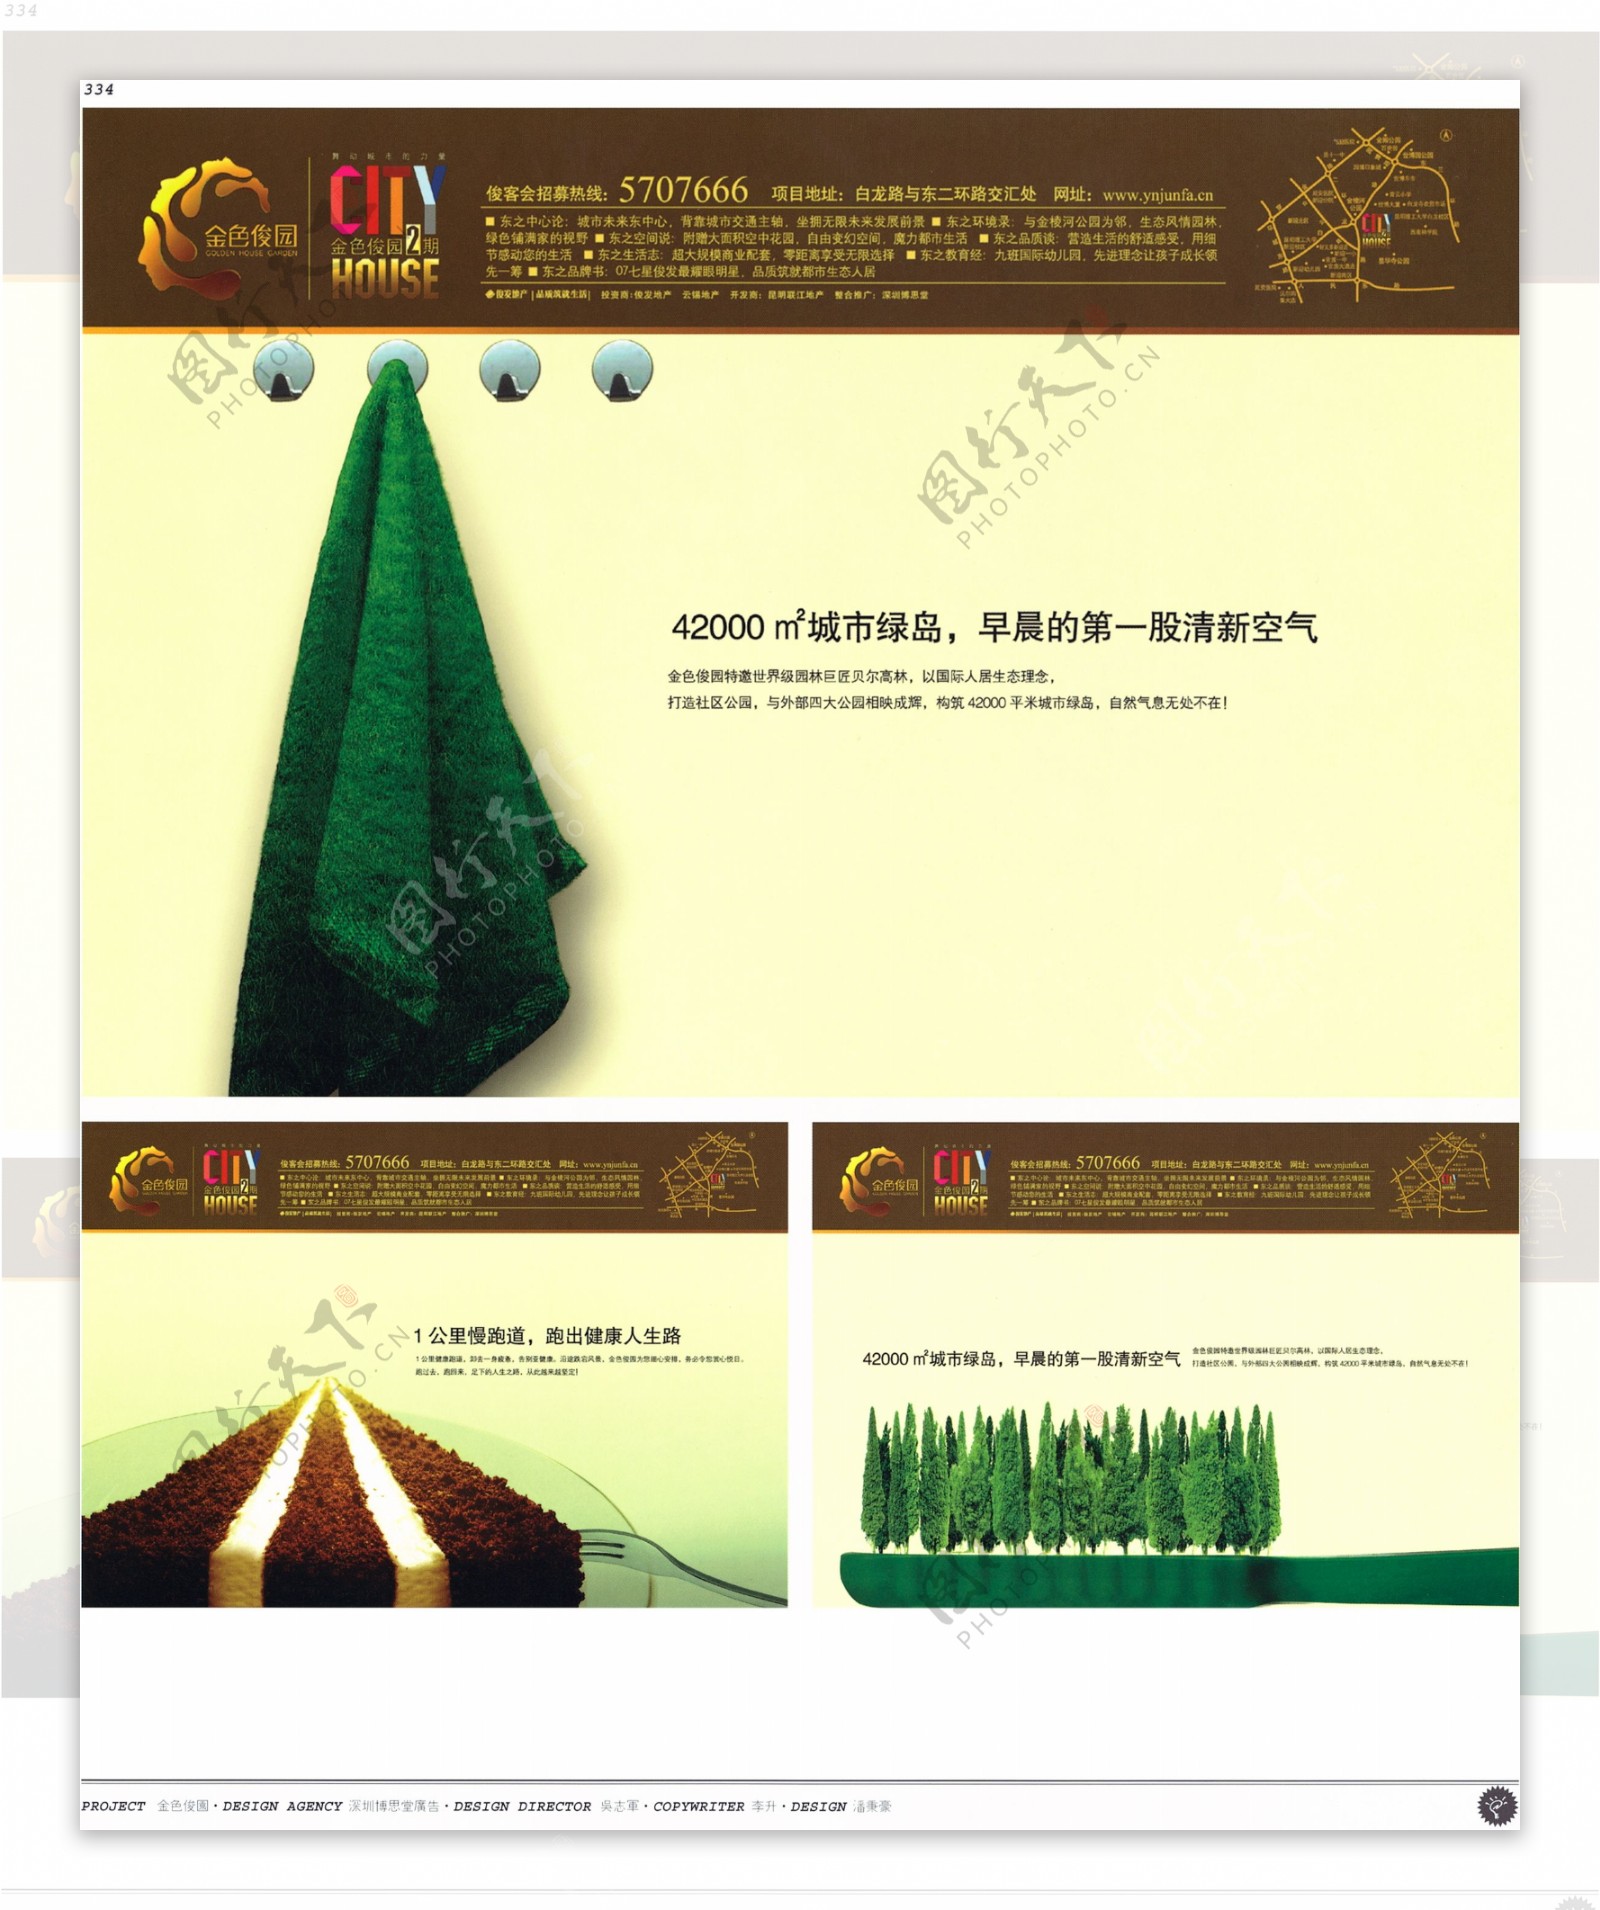 中国房地产广告年鉴第二册创意设计0316